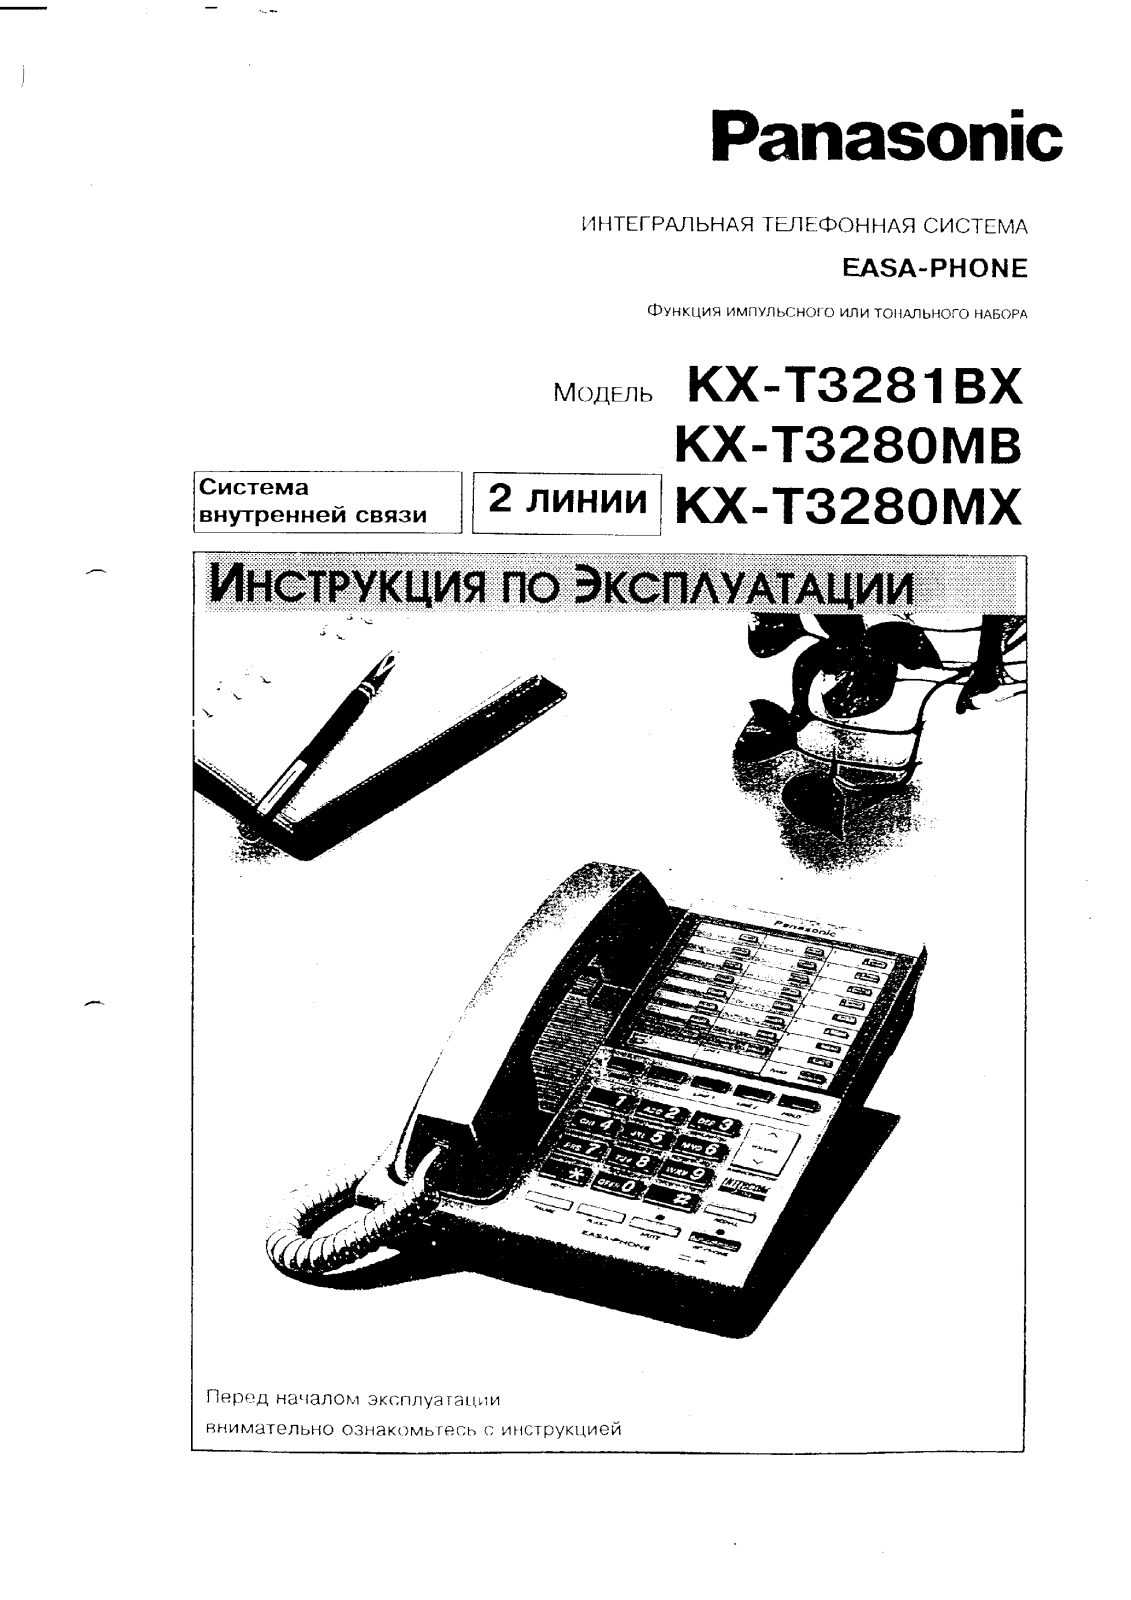 Panasonic KX-T3280MB User Manual